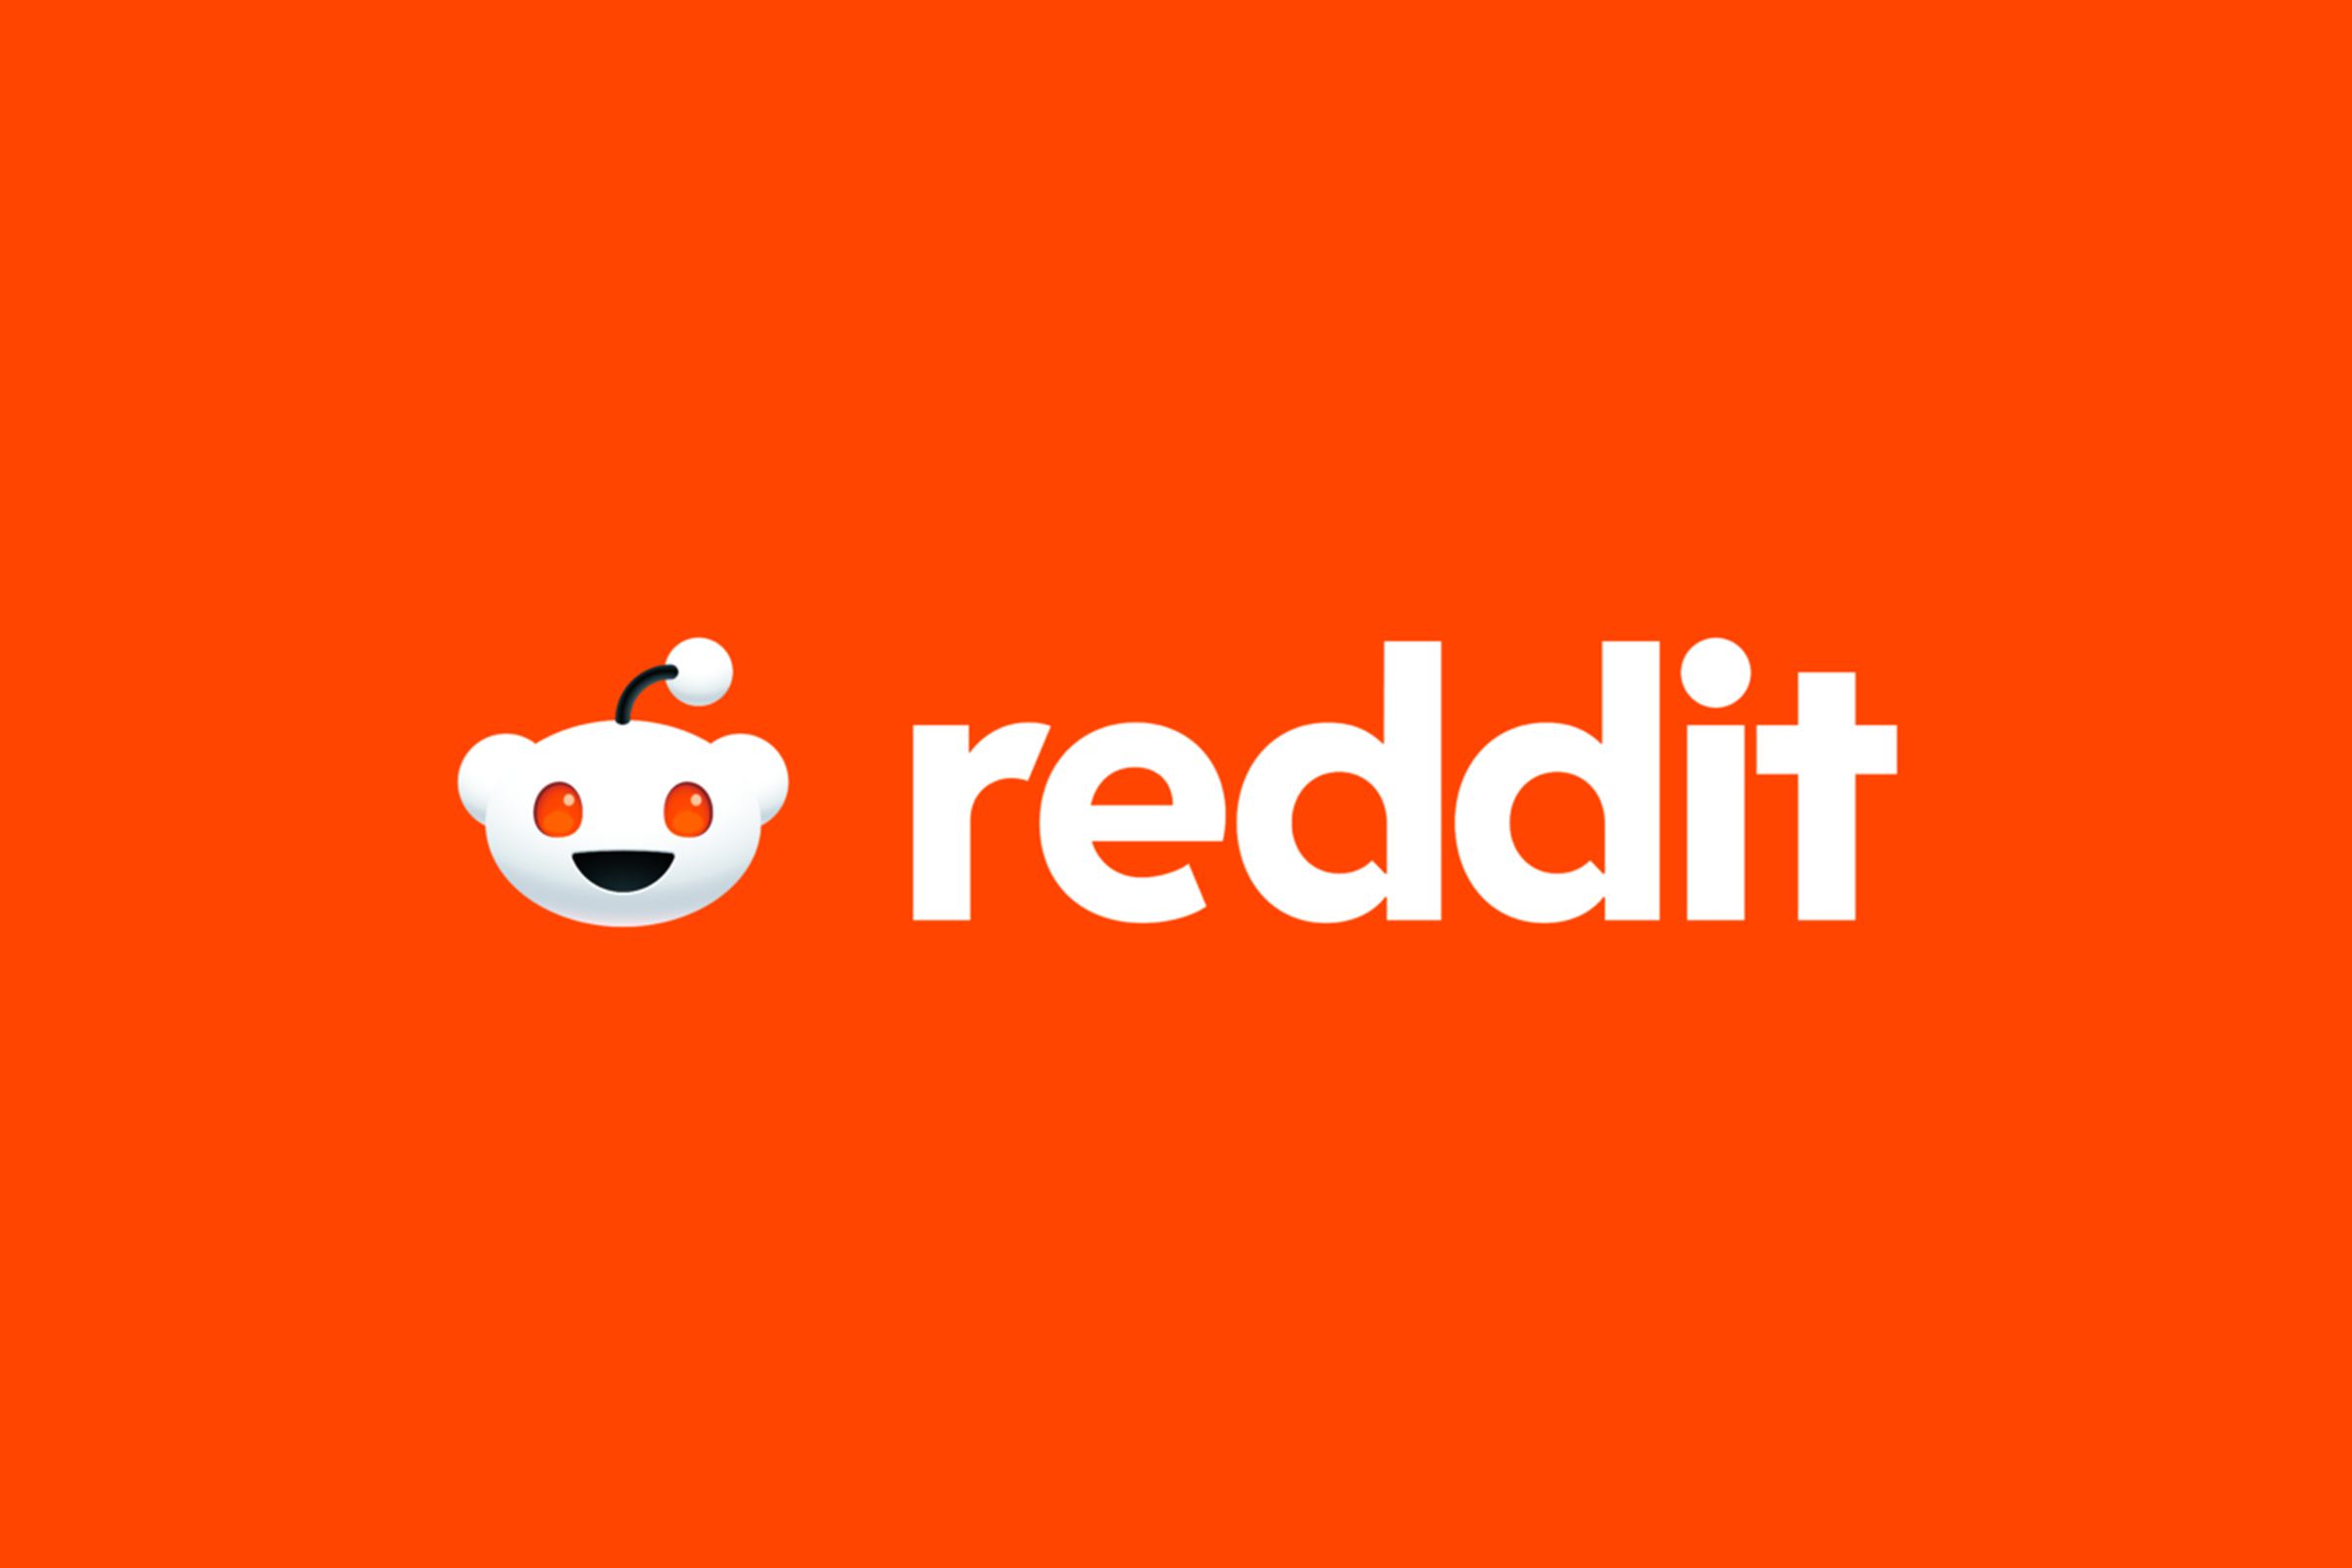 Image of the Reddit logo on a red-orange background.